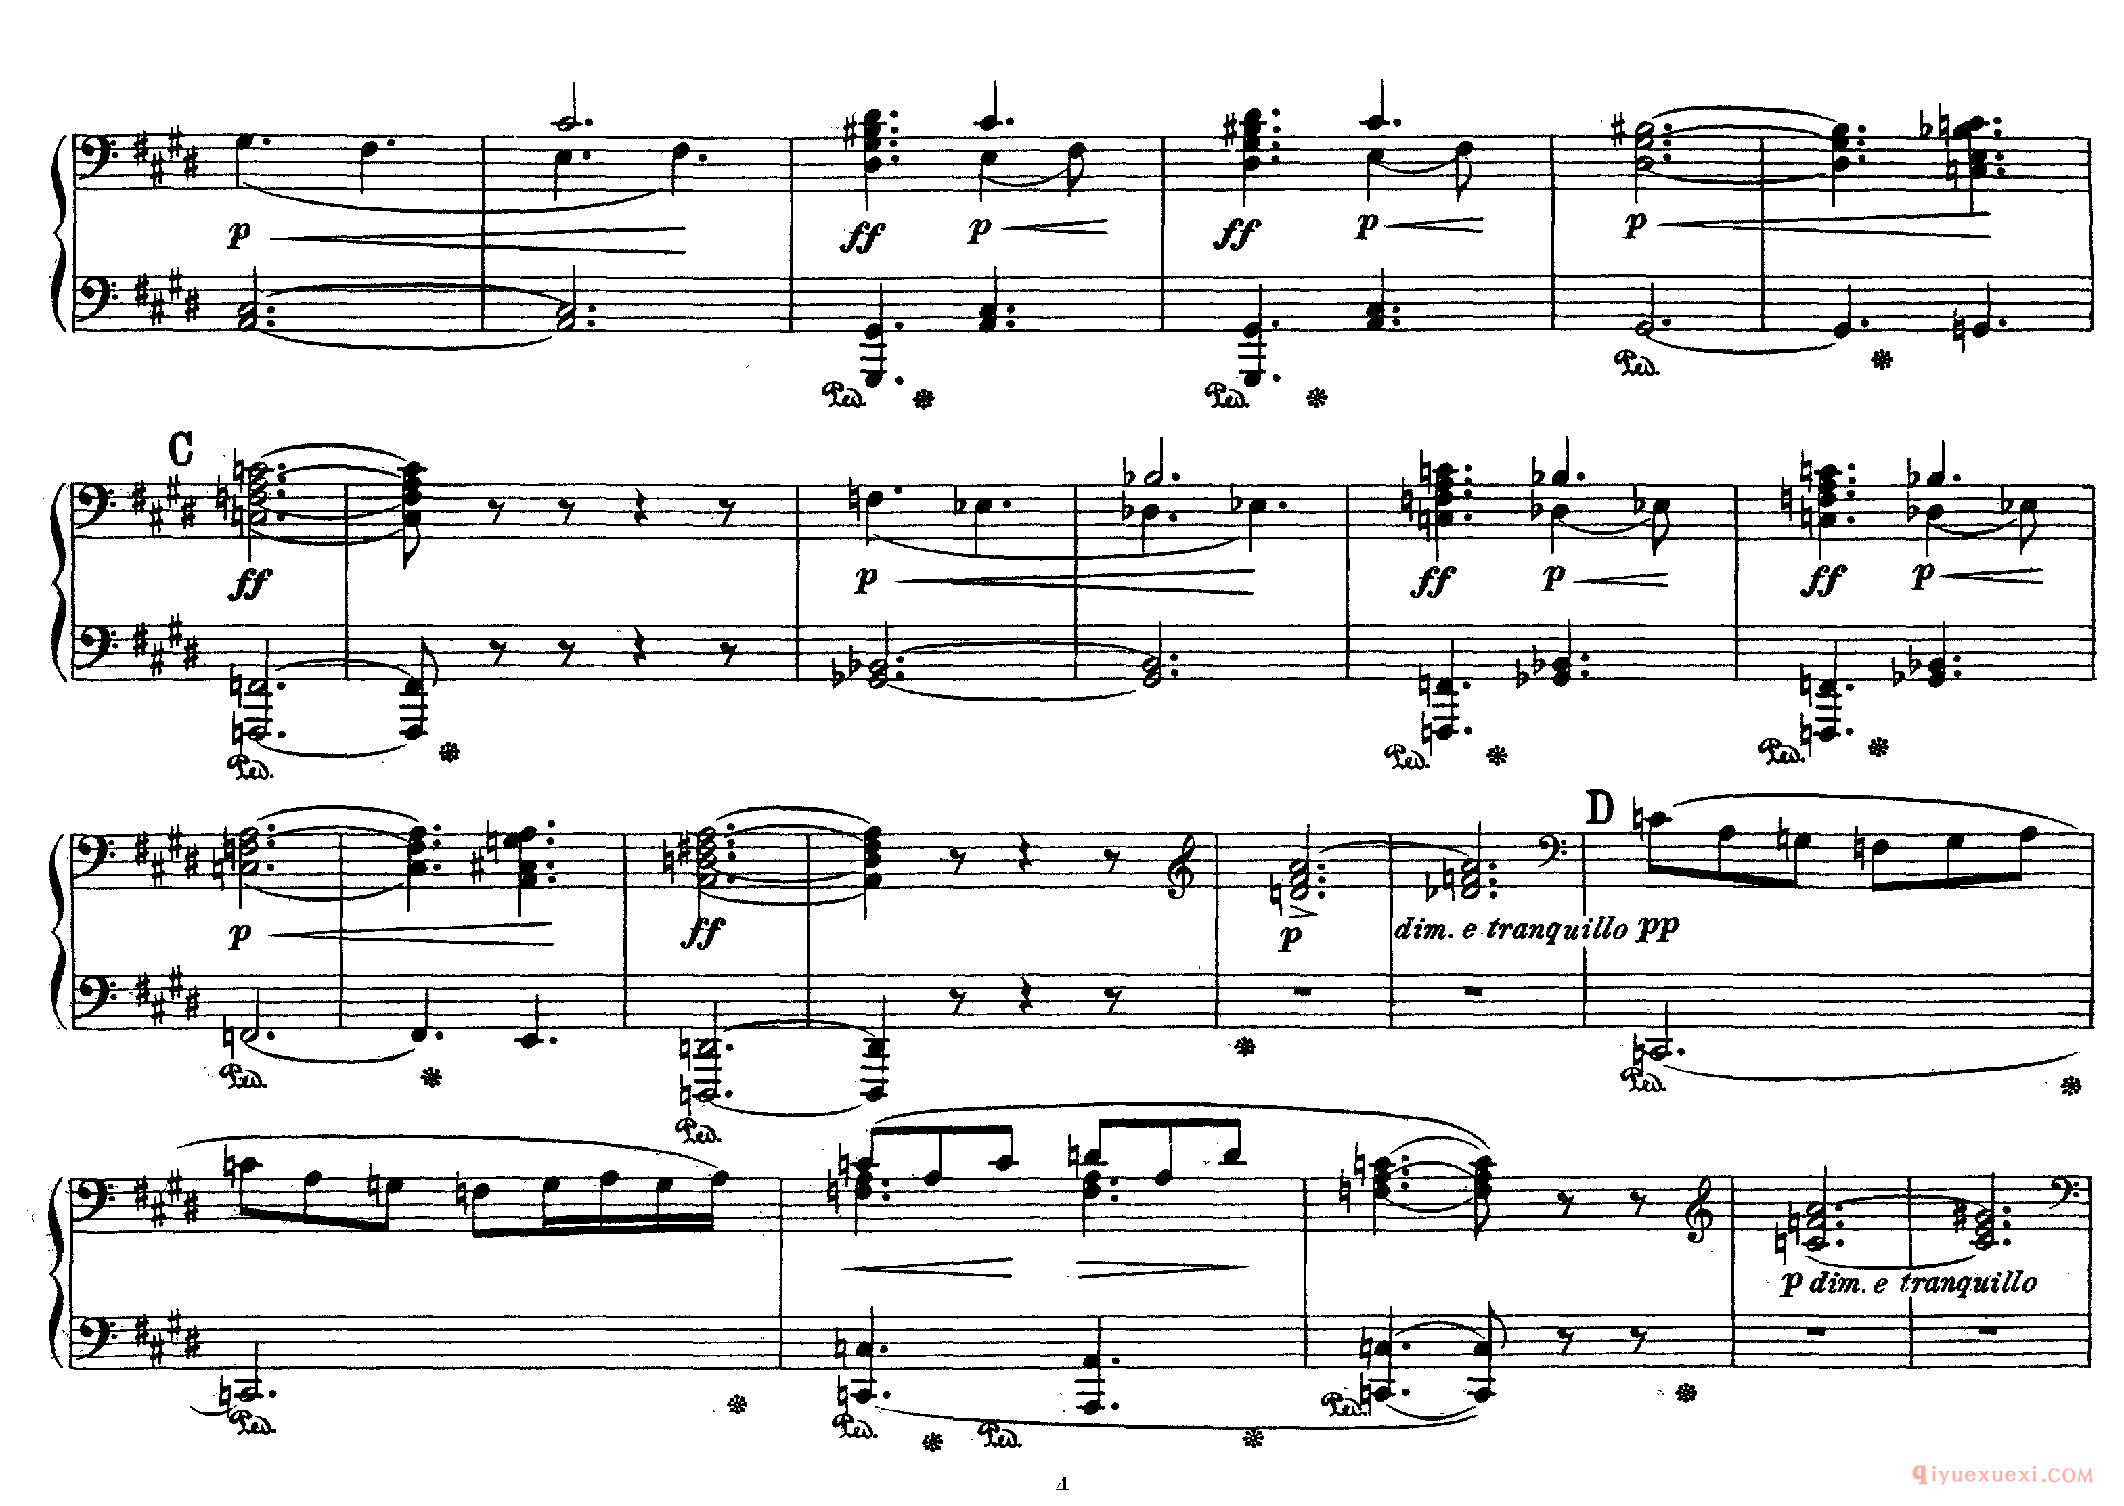 格里格皮尔金组曲_Peer Gynt Suite No 1, Op 46_四手联弹_格里格钢琴谱